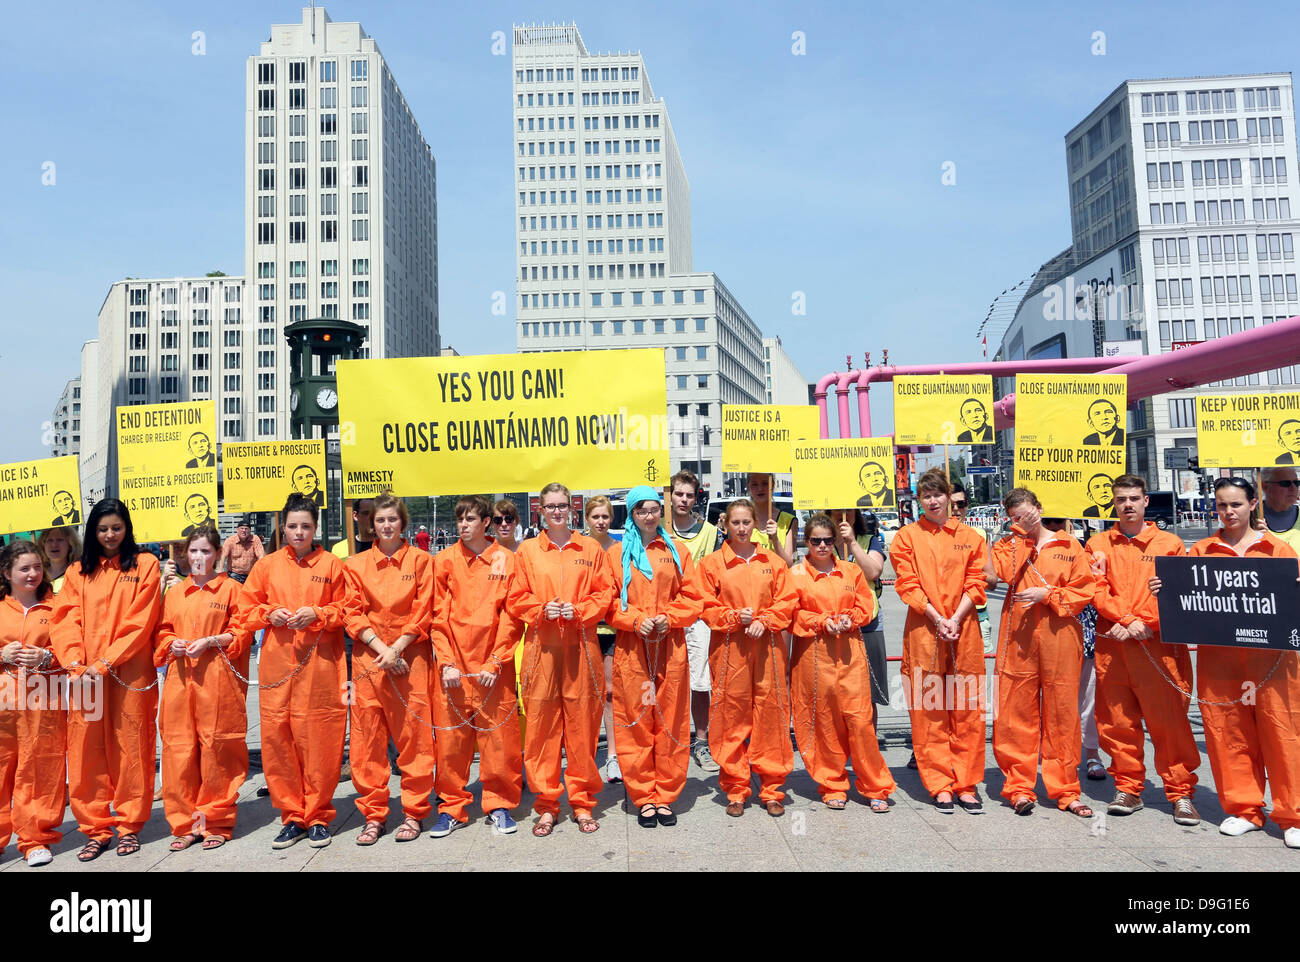 «Jetzt enger Guantanamo!» ist lesbar auf transparenten während einer Demonstration von Amnesty international während des Besuchs von US-Präsident Barak Obama in Berlin, Deutschland-19. Juni 2013. Foto: Stephanie Pilick/Dpa/Dpa/Alamy Live News/Dpa/Alamy Live News/Dpa/Alamy Live News/Dpa/Alamy Live News Stockfoto